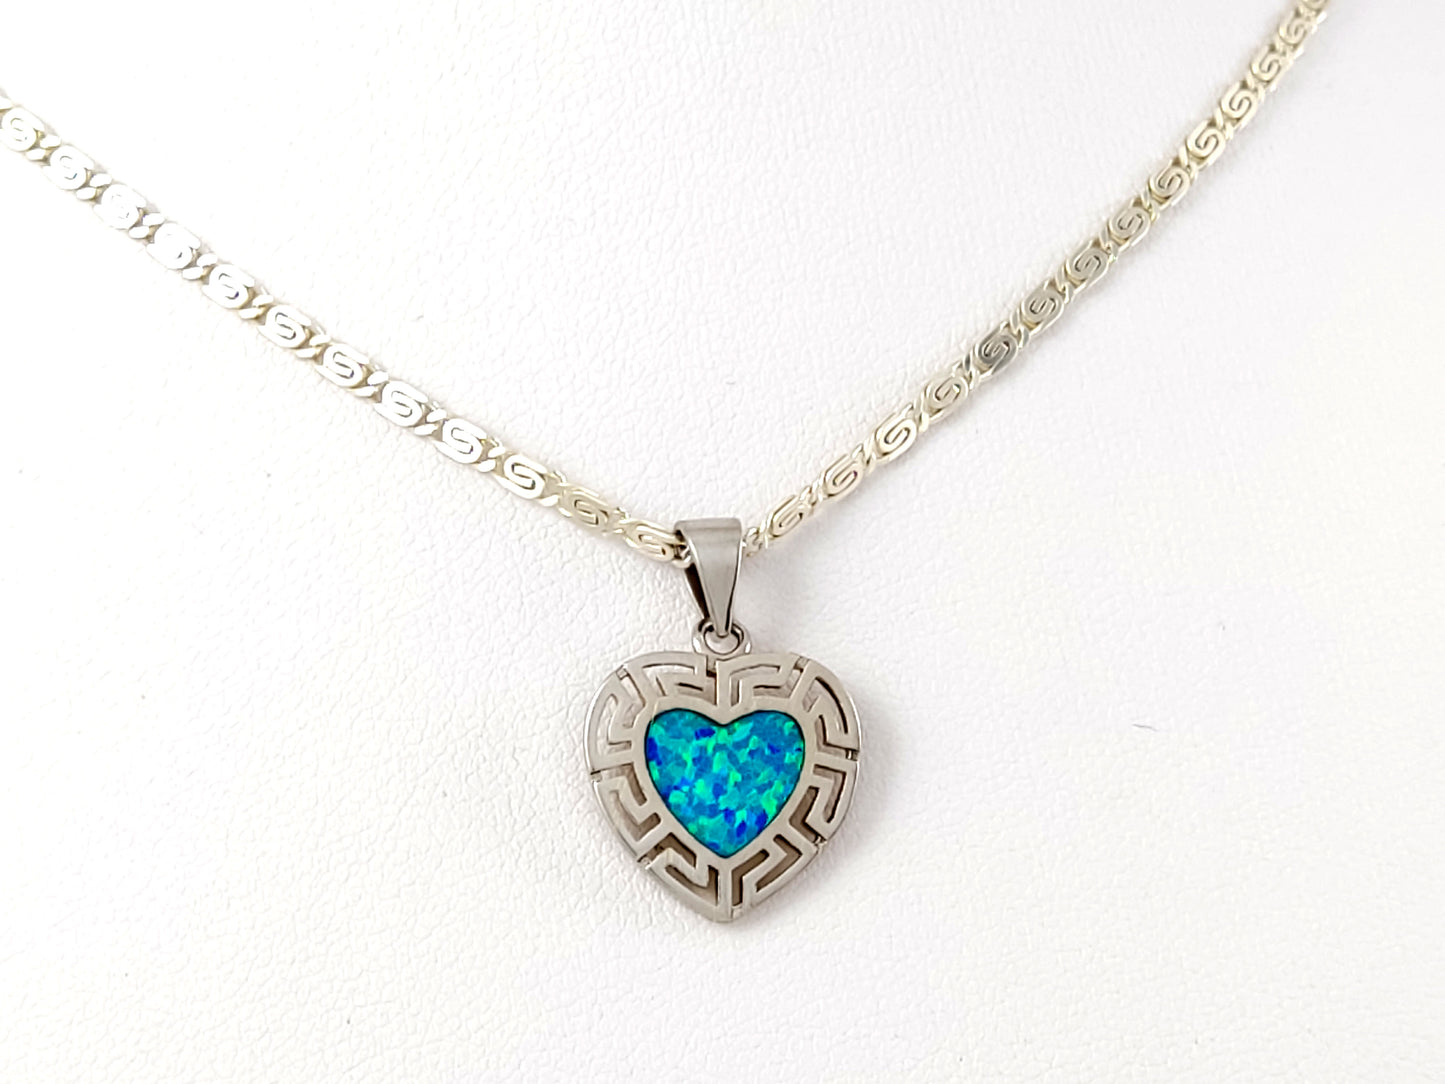 Collier avec pendentif en forme de cœur en argent et opale bleue, clé grecque, 15 mm